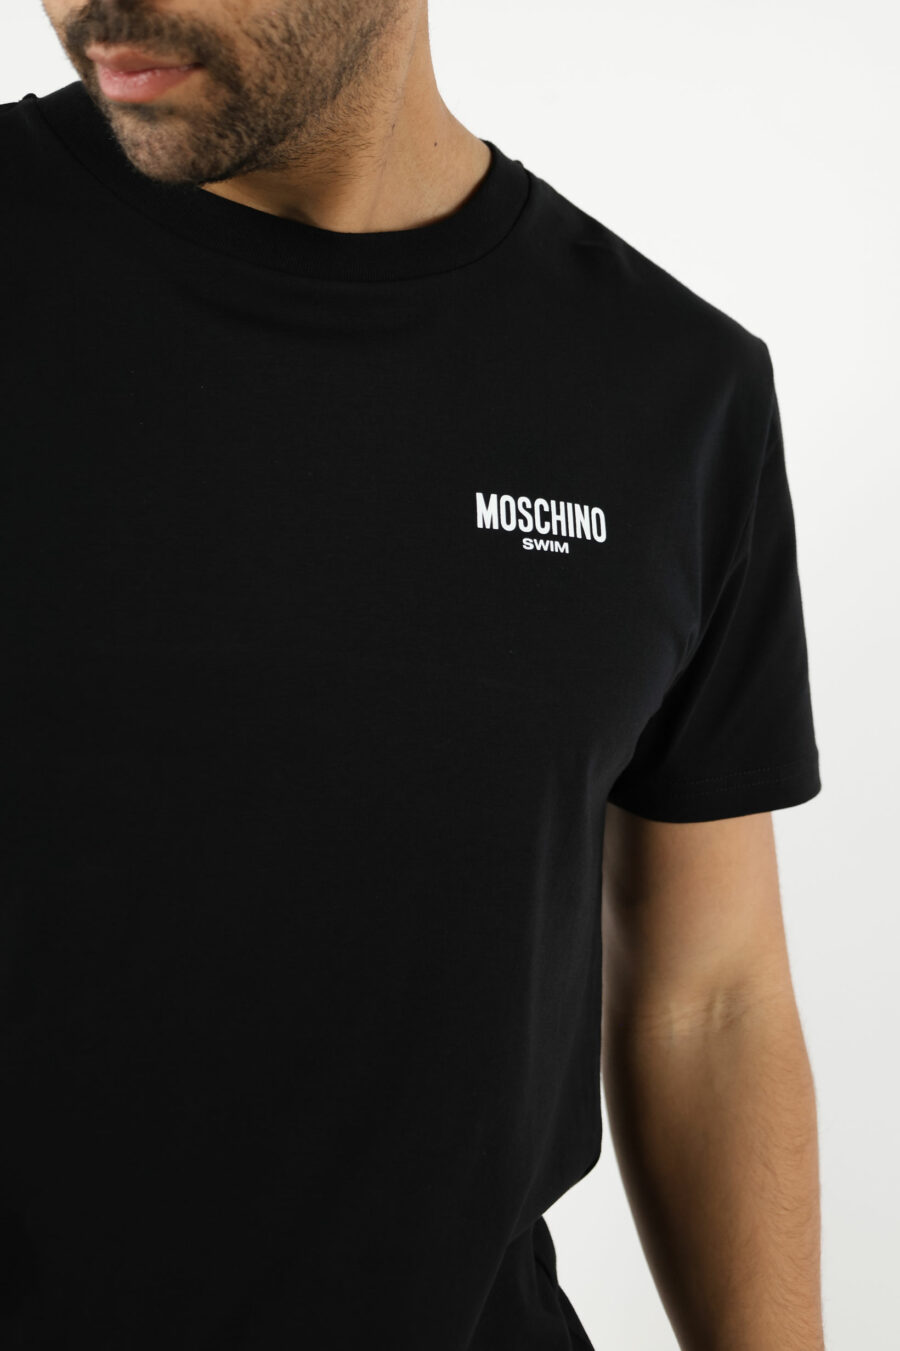 Schwarzes T-Shirt mit Minilogue "swim" - 111055